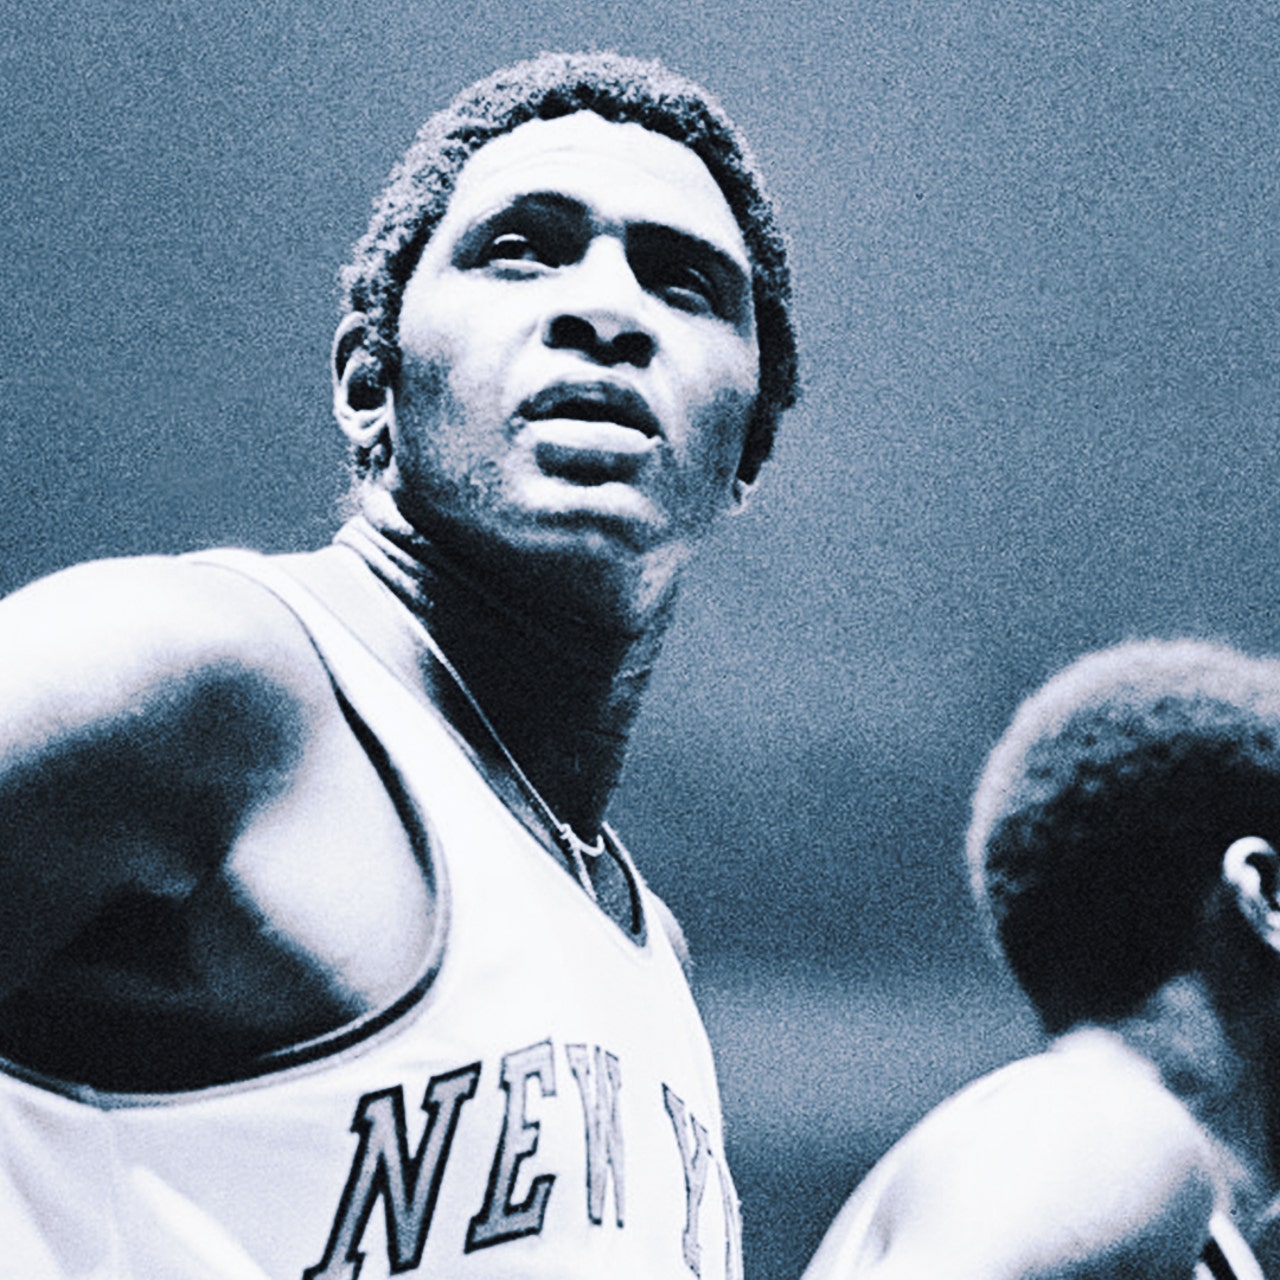 New York Knicks - Walt Frazier by Ken Regan